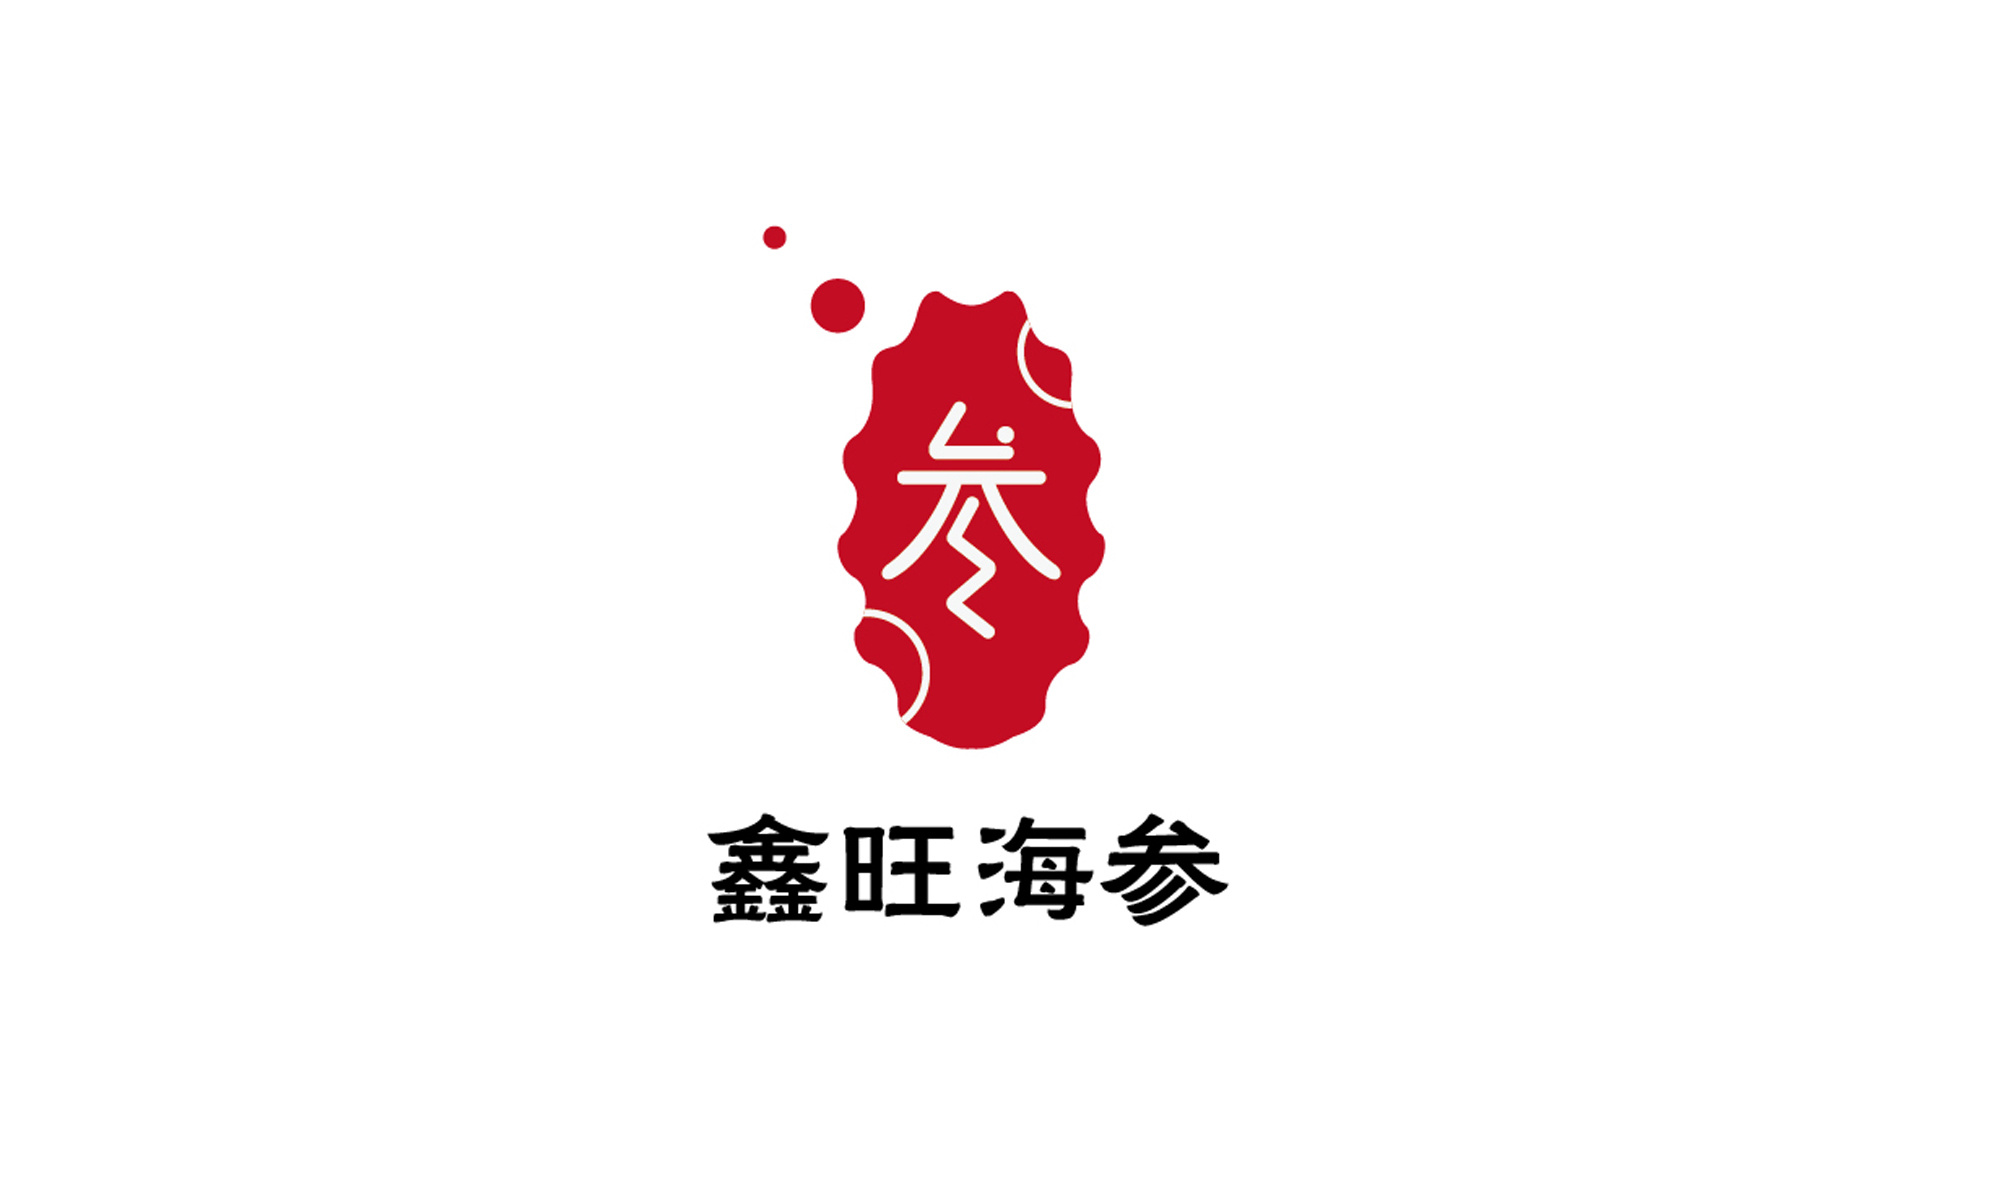 棒棰岛海参logo图片